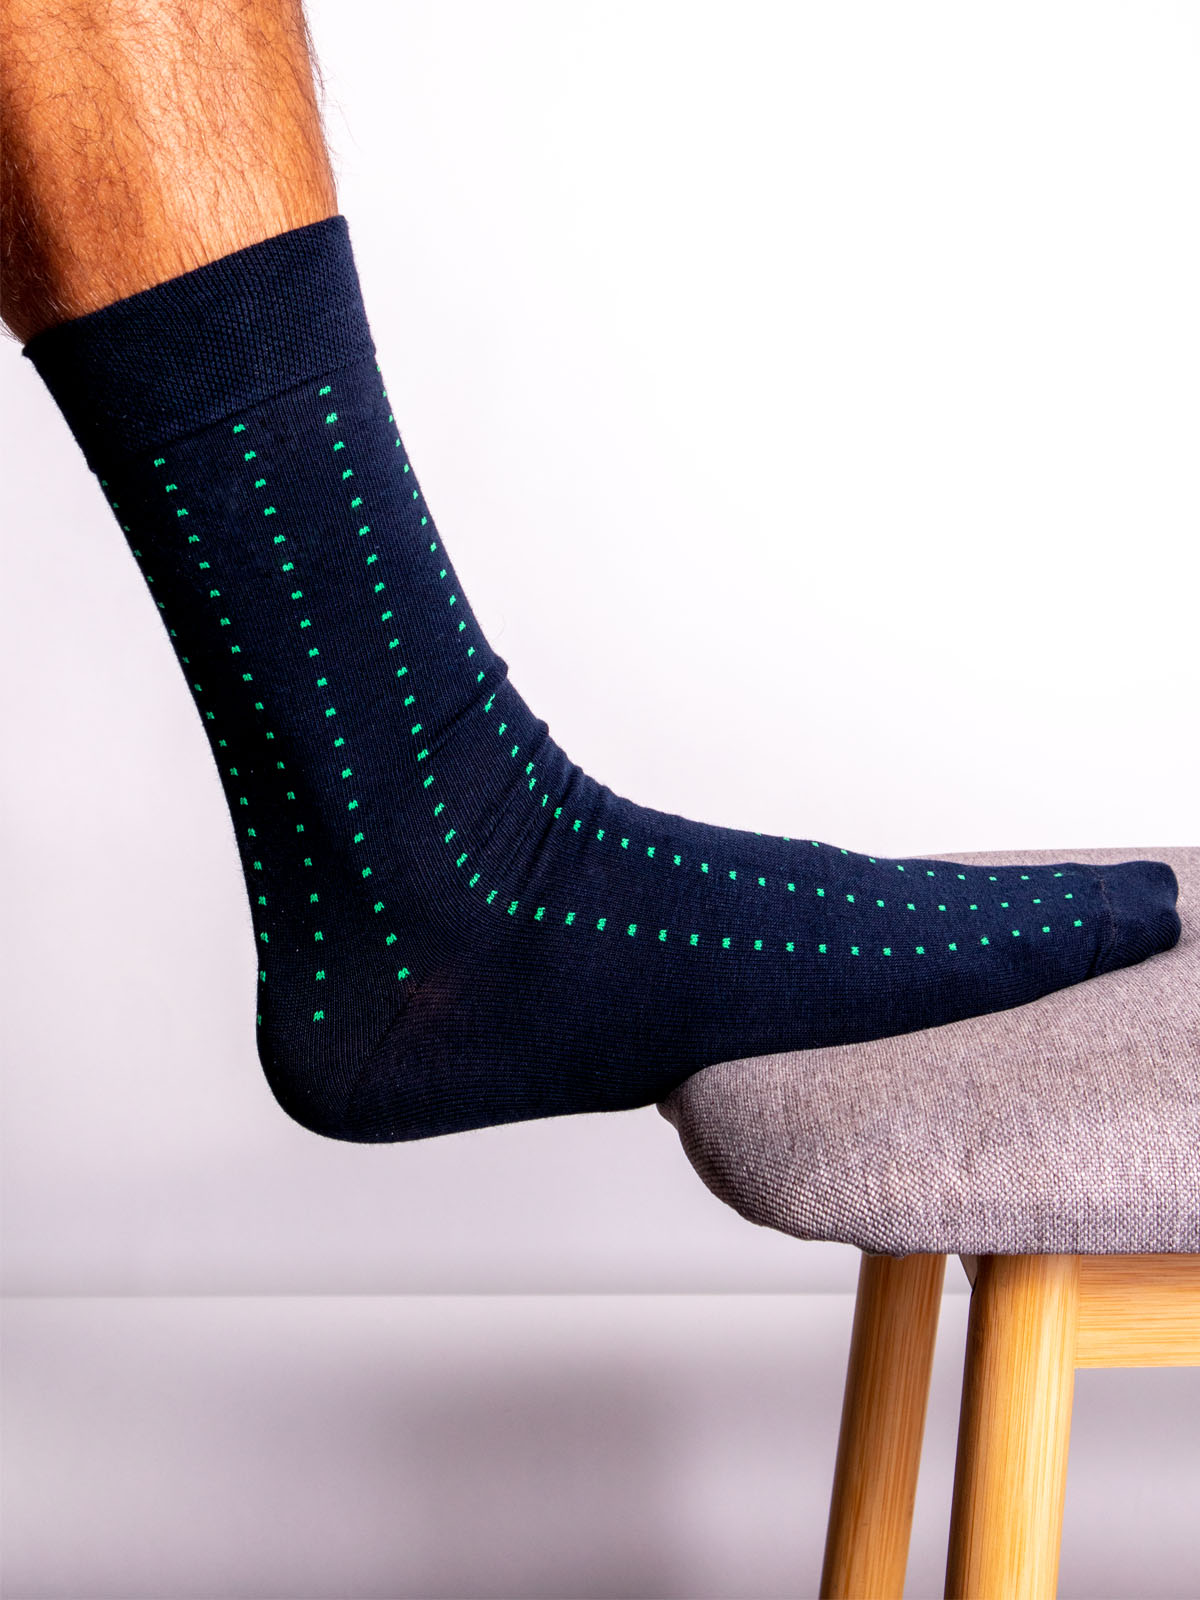 Тъмно сини чорапи със зелени квадрати - 10525 - 7.00 лв img2